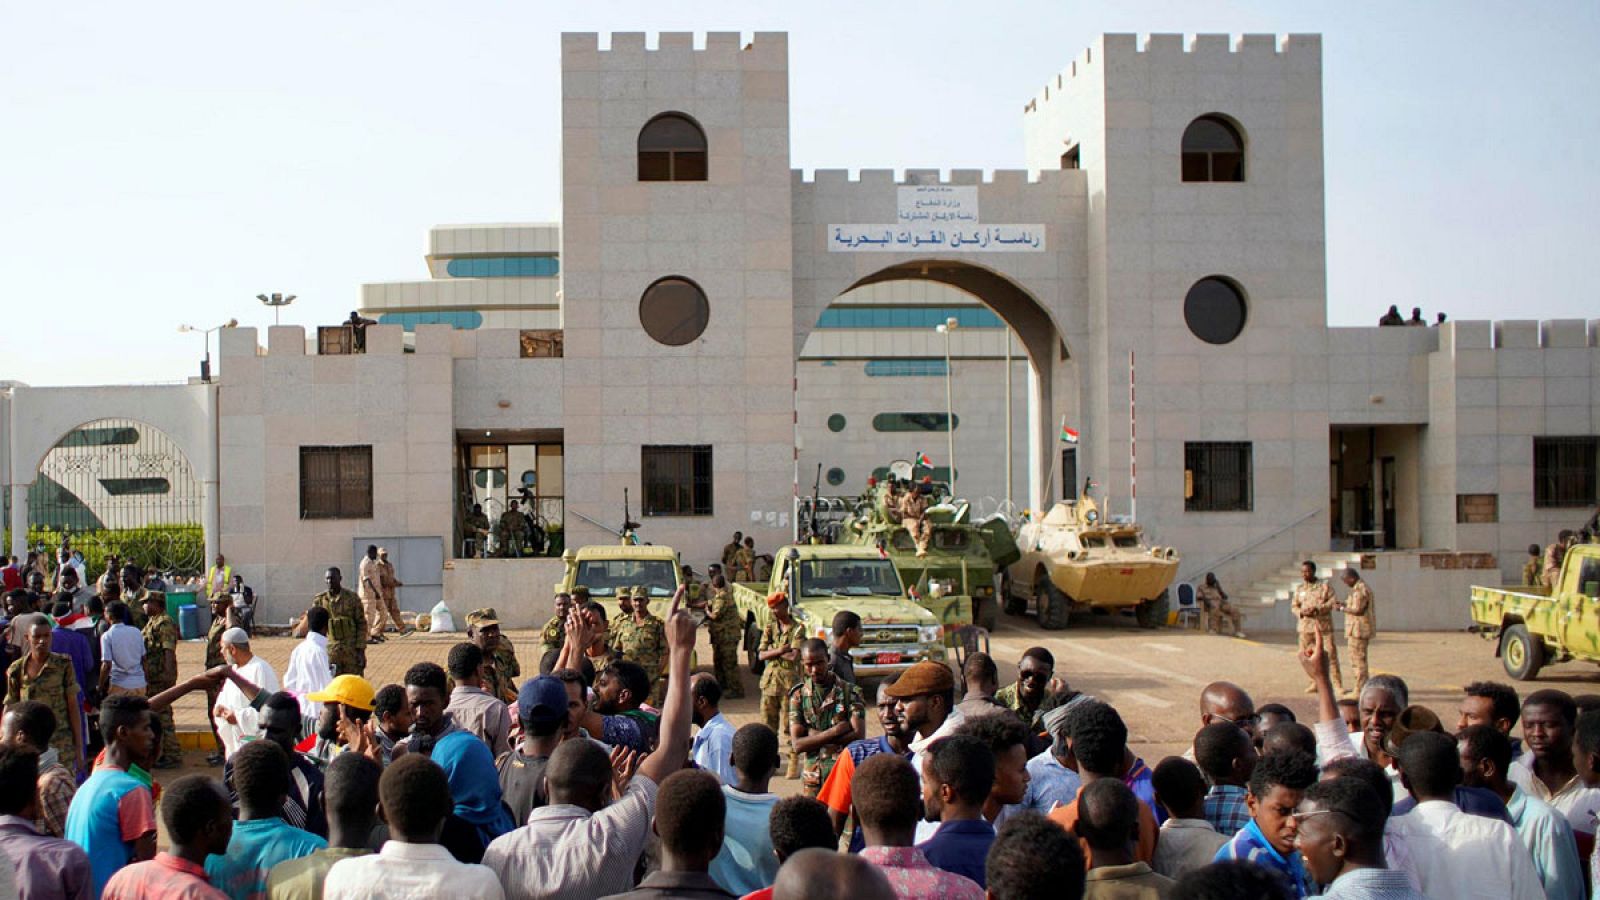 Los manifestantes sudaneses se reúnen para protestar contra el anuncio del ejército de que el presidente Omar al-Bashir sería reemplazado por un consejo de transición liderado por militares